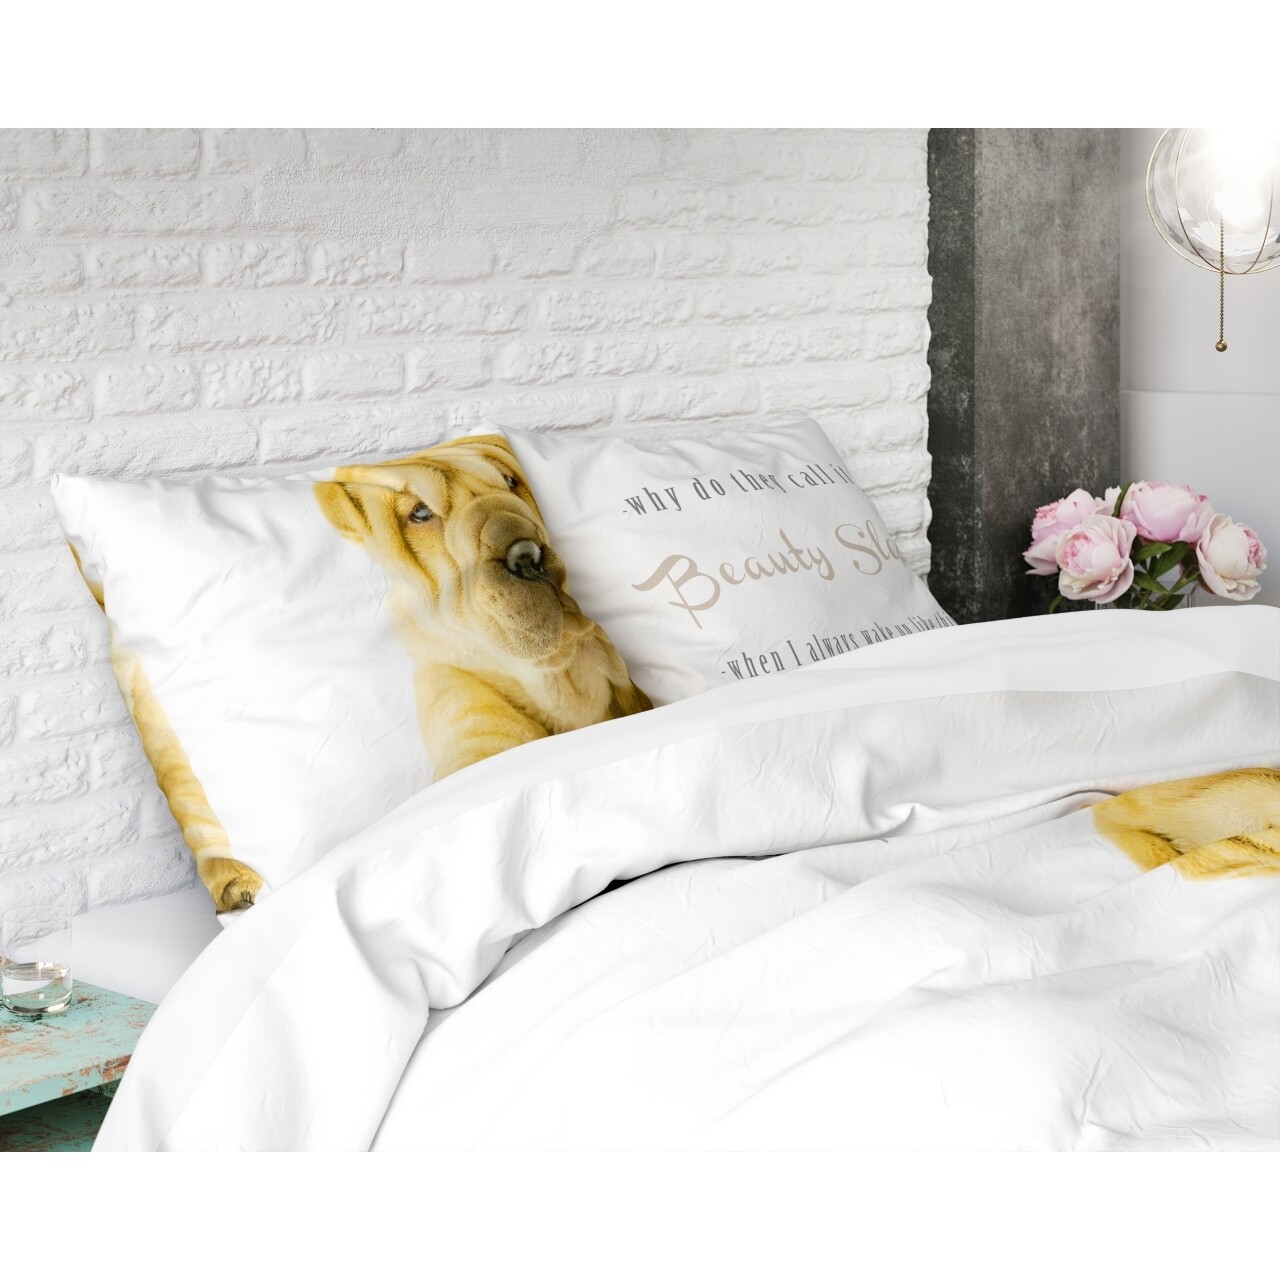 Lenjerie De Pat Dubla Beauty Sleep White, Royal Textile, 3 Piese, 200 X 220 Cm, 100% Bumbac, Multicolora